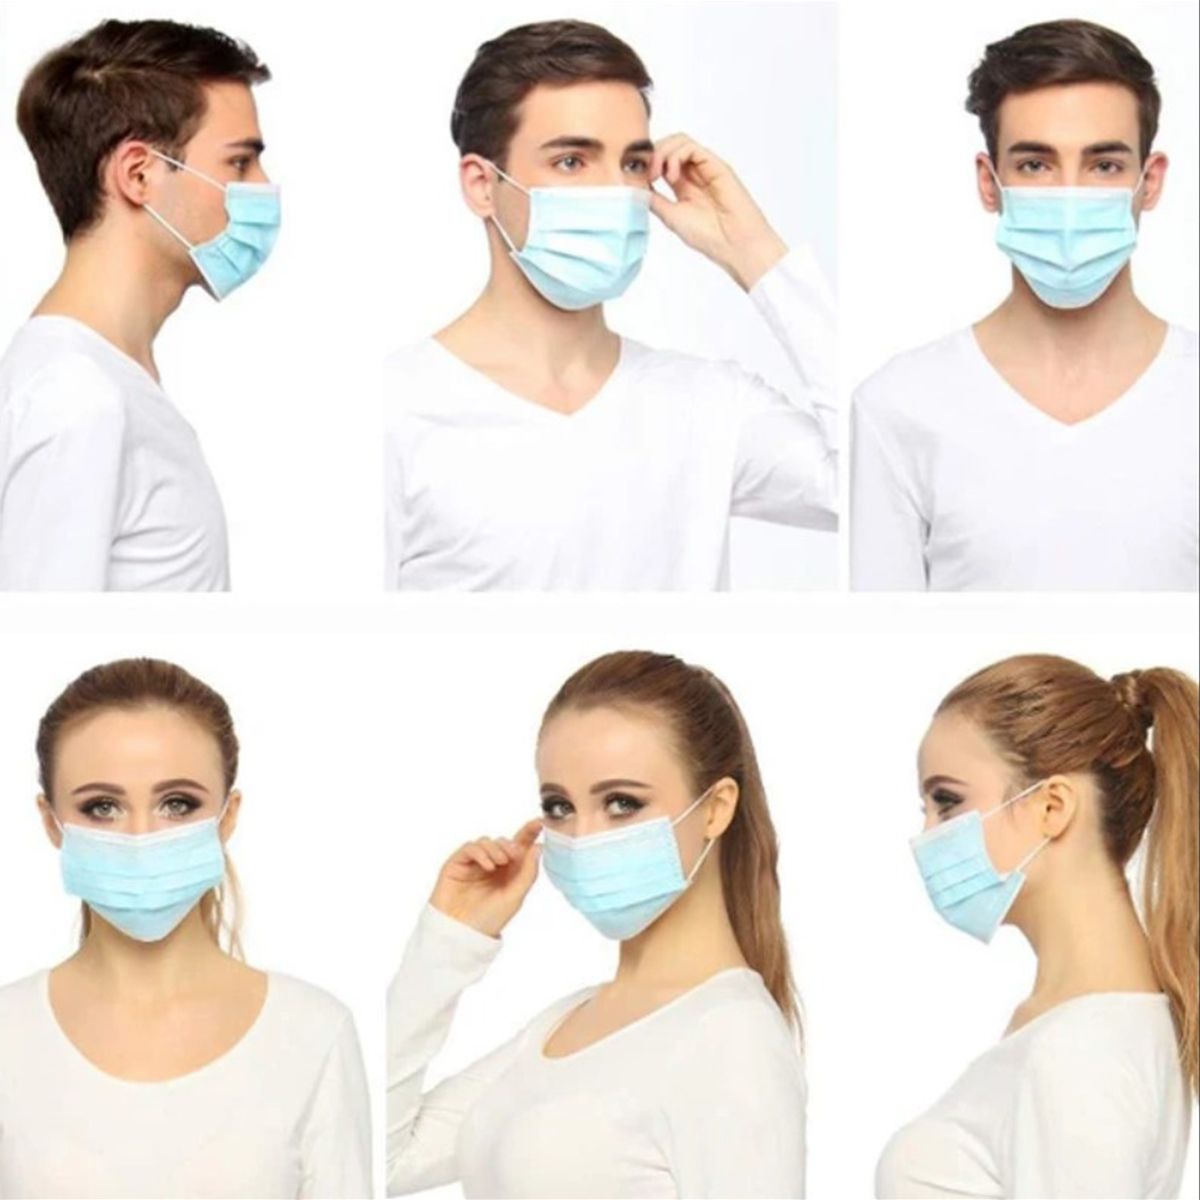 Маска медицинская где маски. Маска медицинская. Медицинская маска для лица. Хирургическая маска. Защитная медицинская маска для лица.